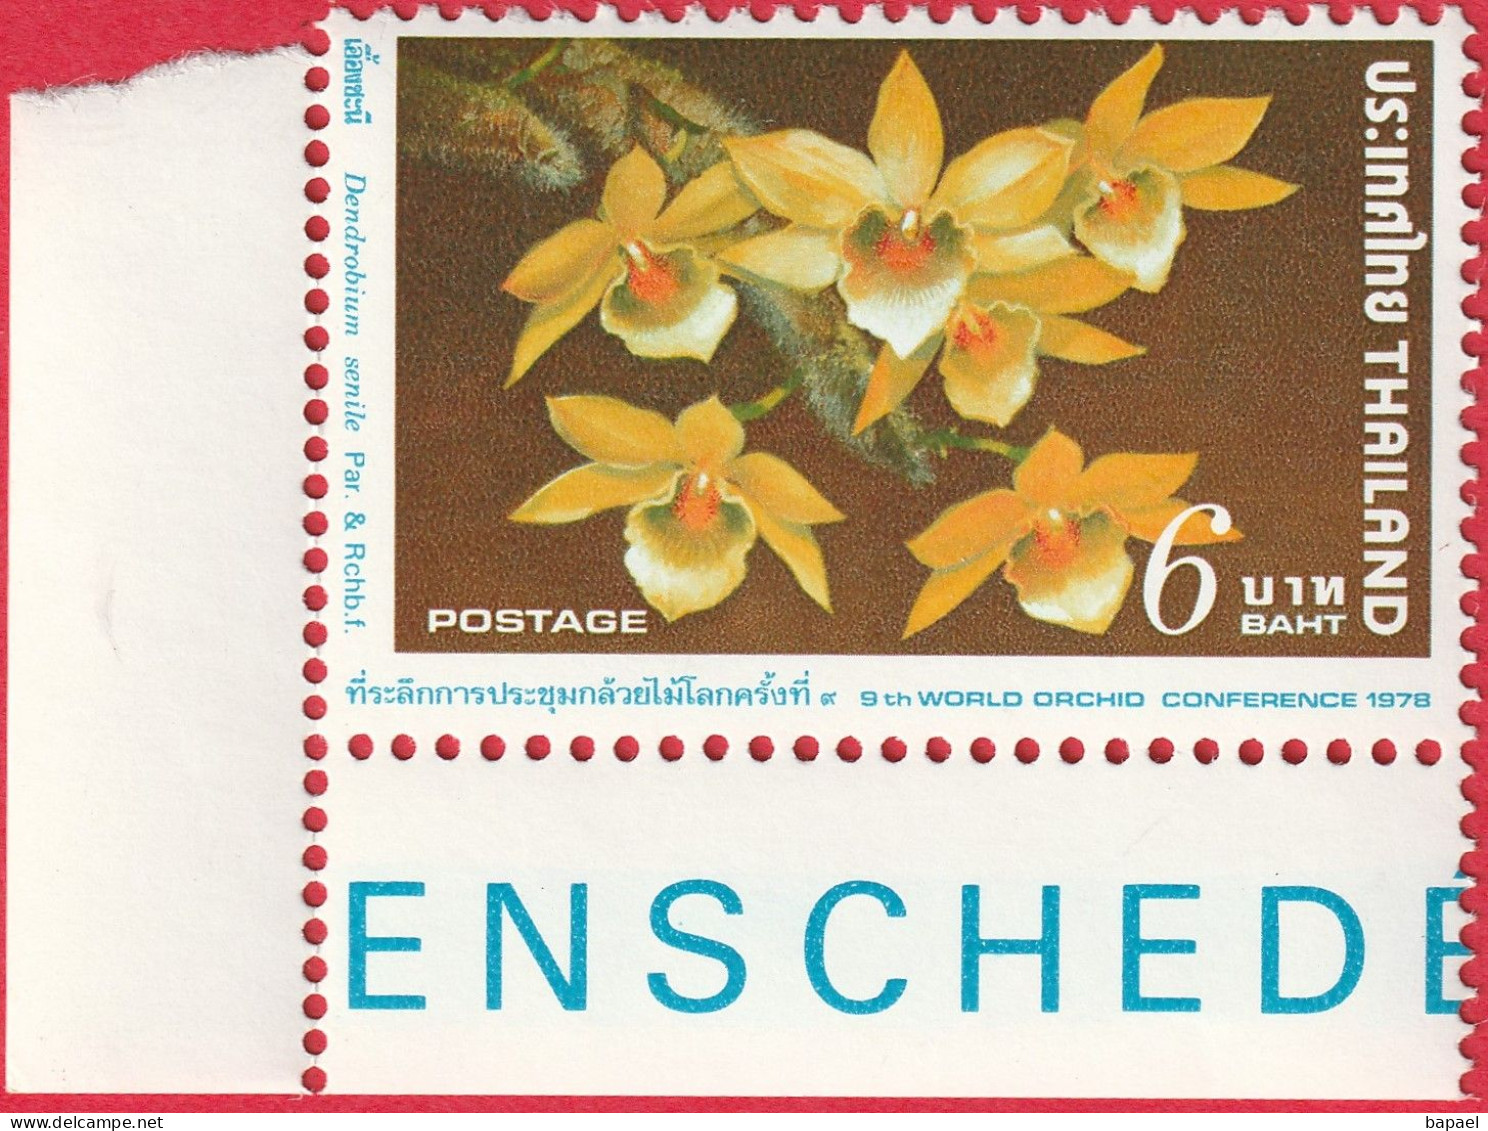 N° Yvert & Tellier 841 - Timbre De Thaïlande (1978) (Neuf - **) - 9ème Conférence Mondiale Orchidées (Dendrobiome Senile - Thaïlande